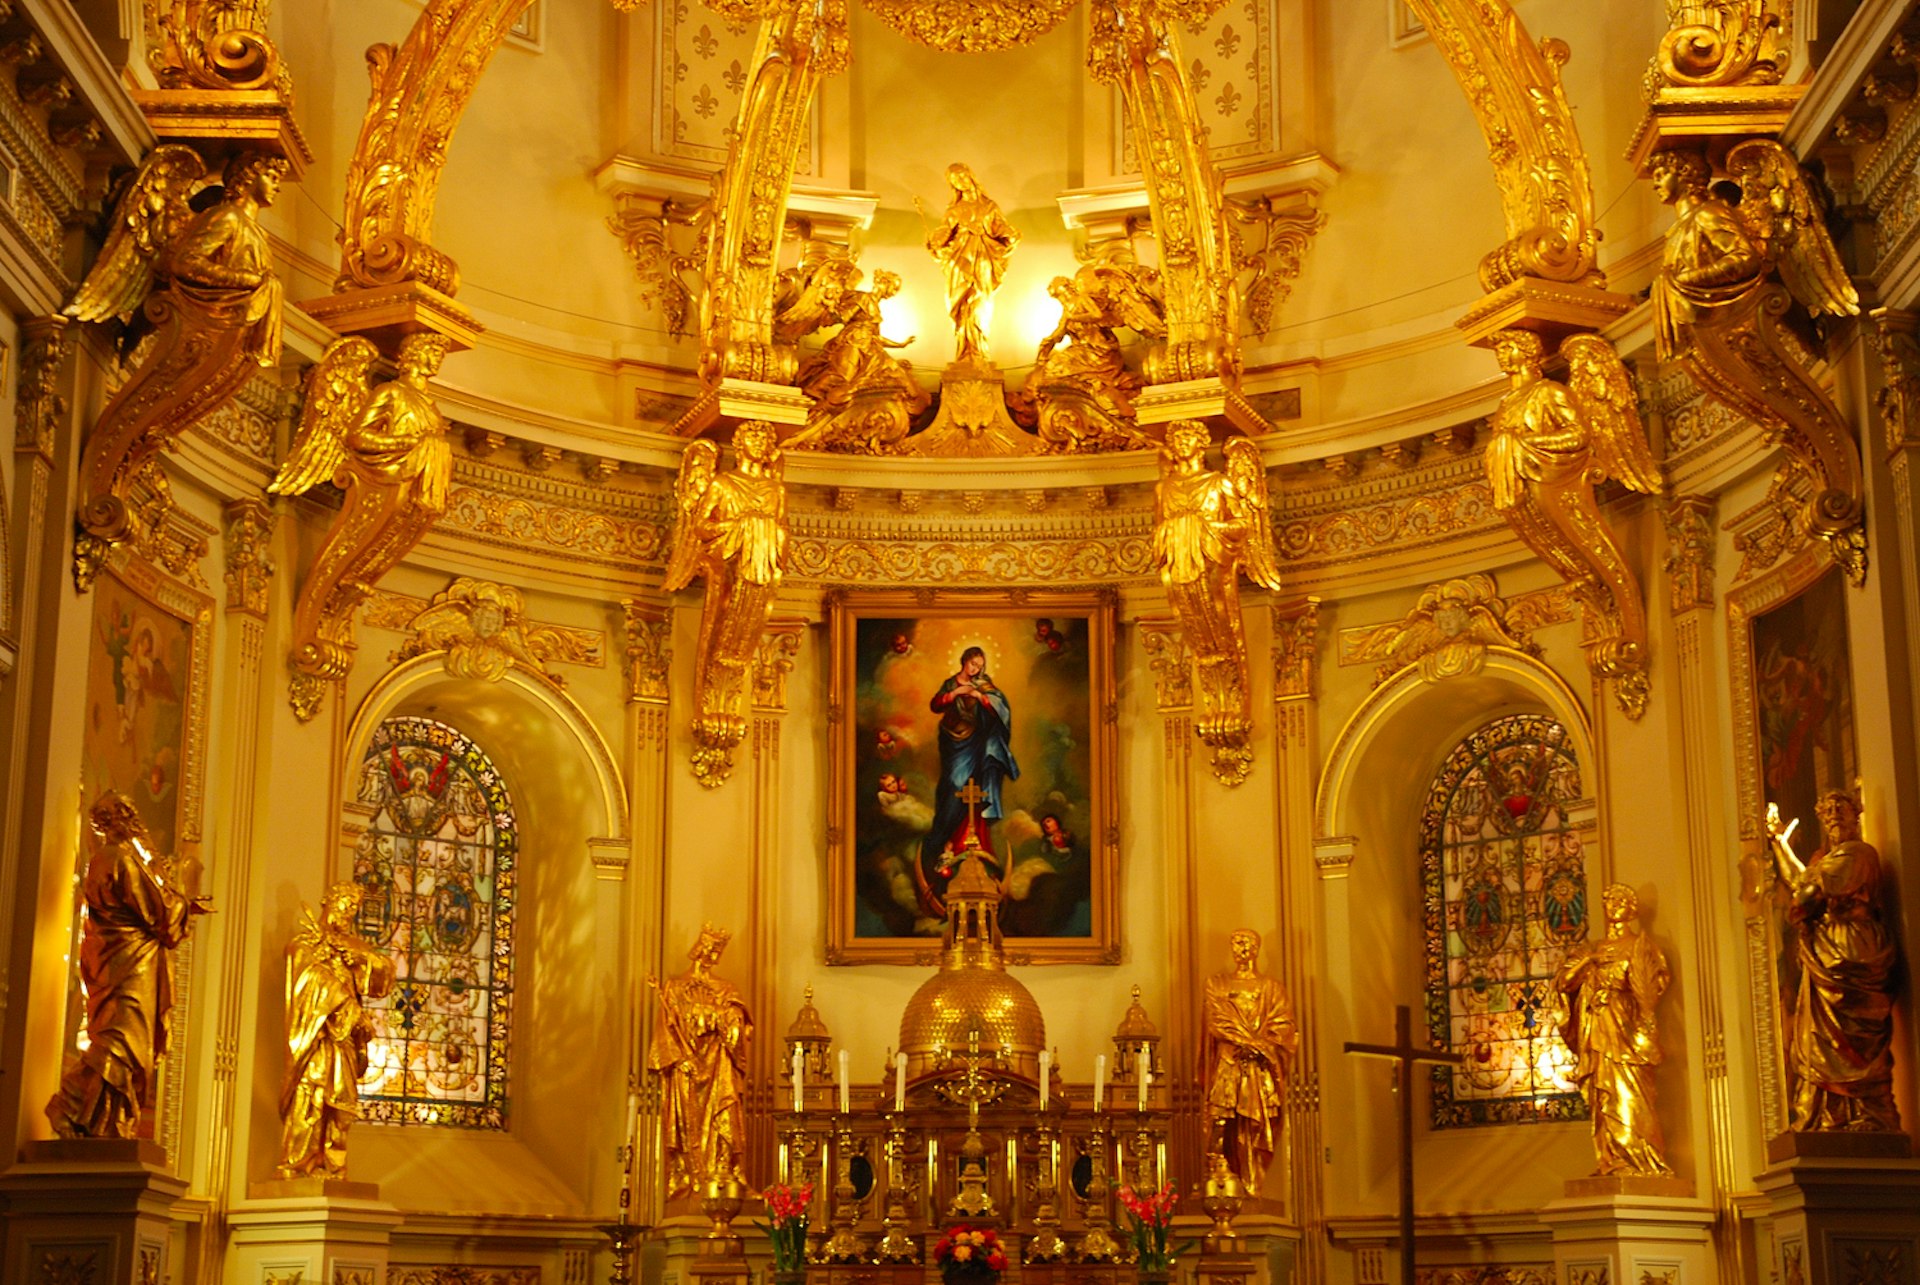 The ornate golden interior of the Basilique-Cathédrale Notre-Dame de Québec 